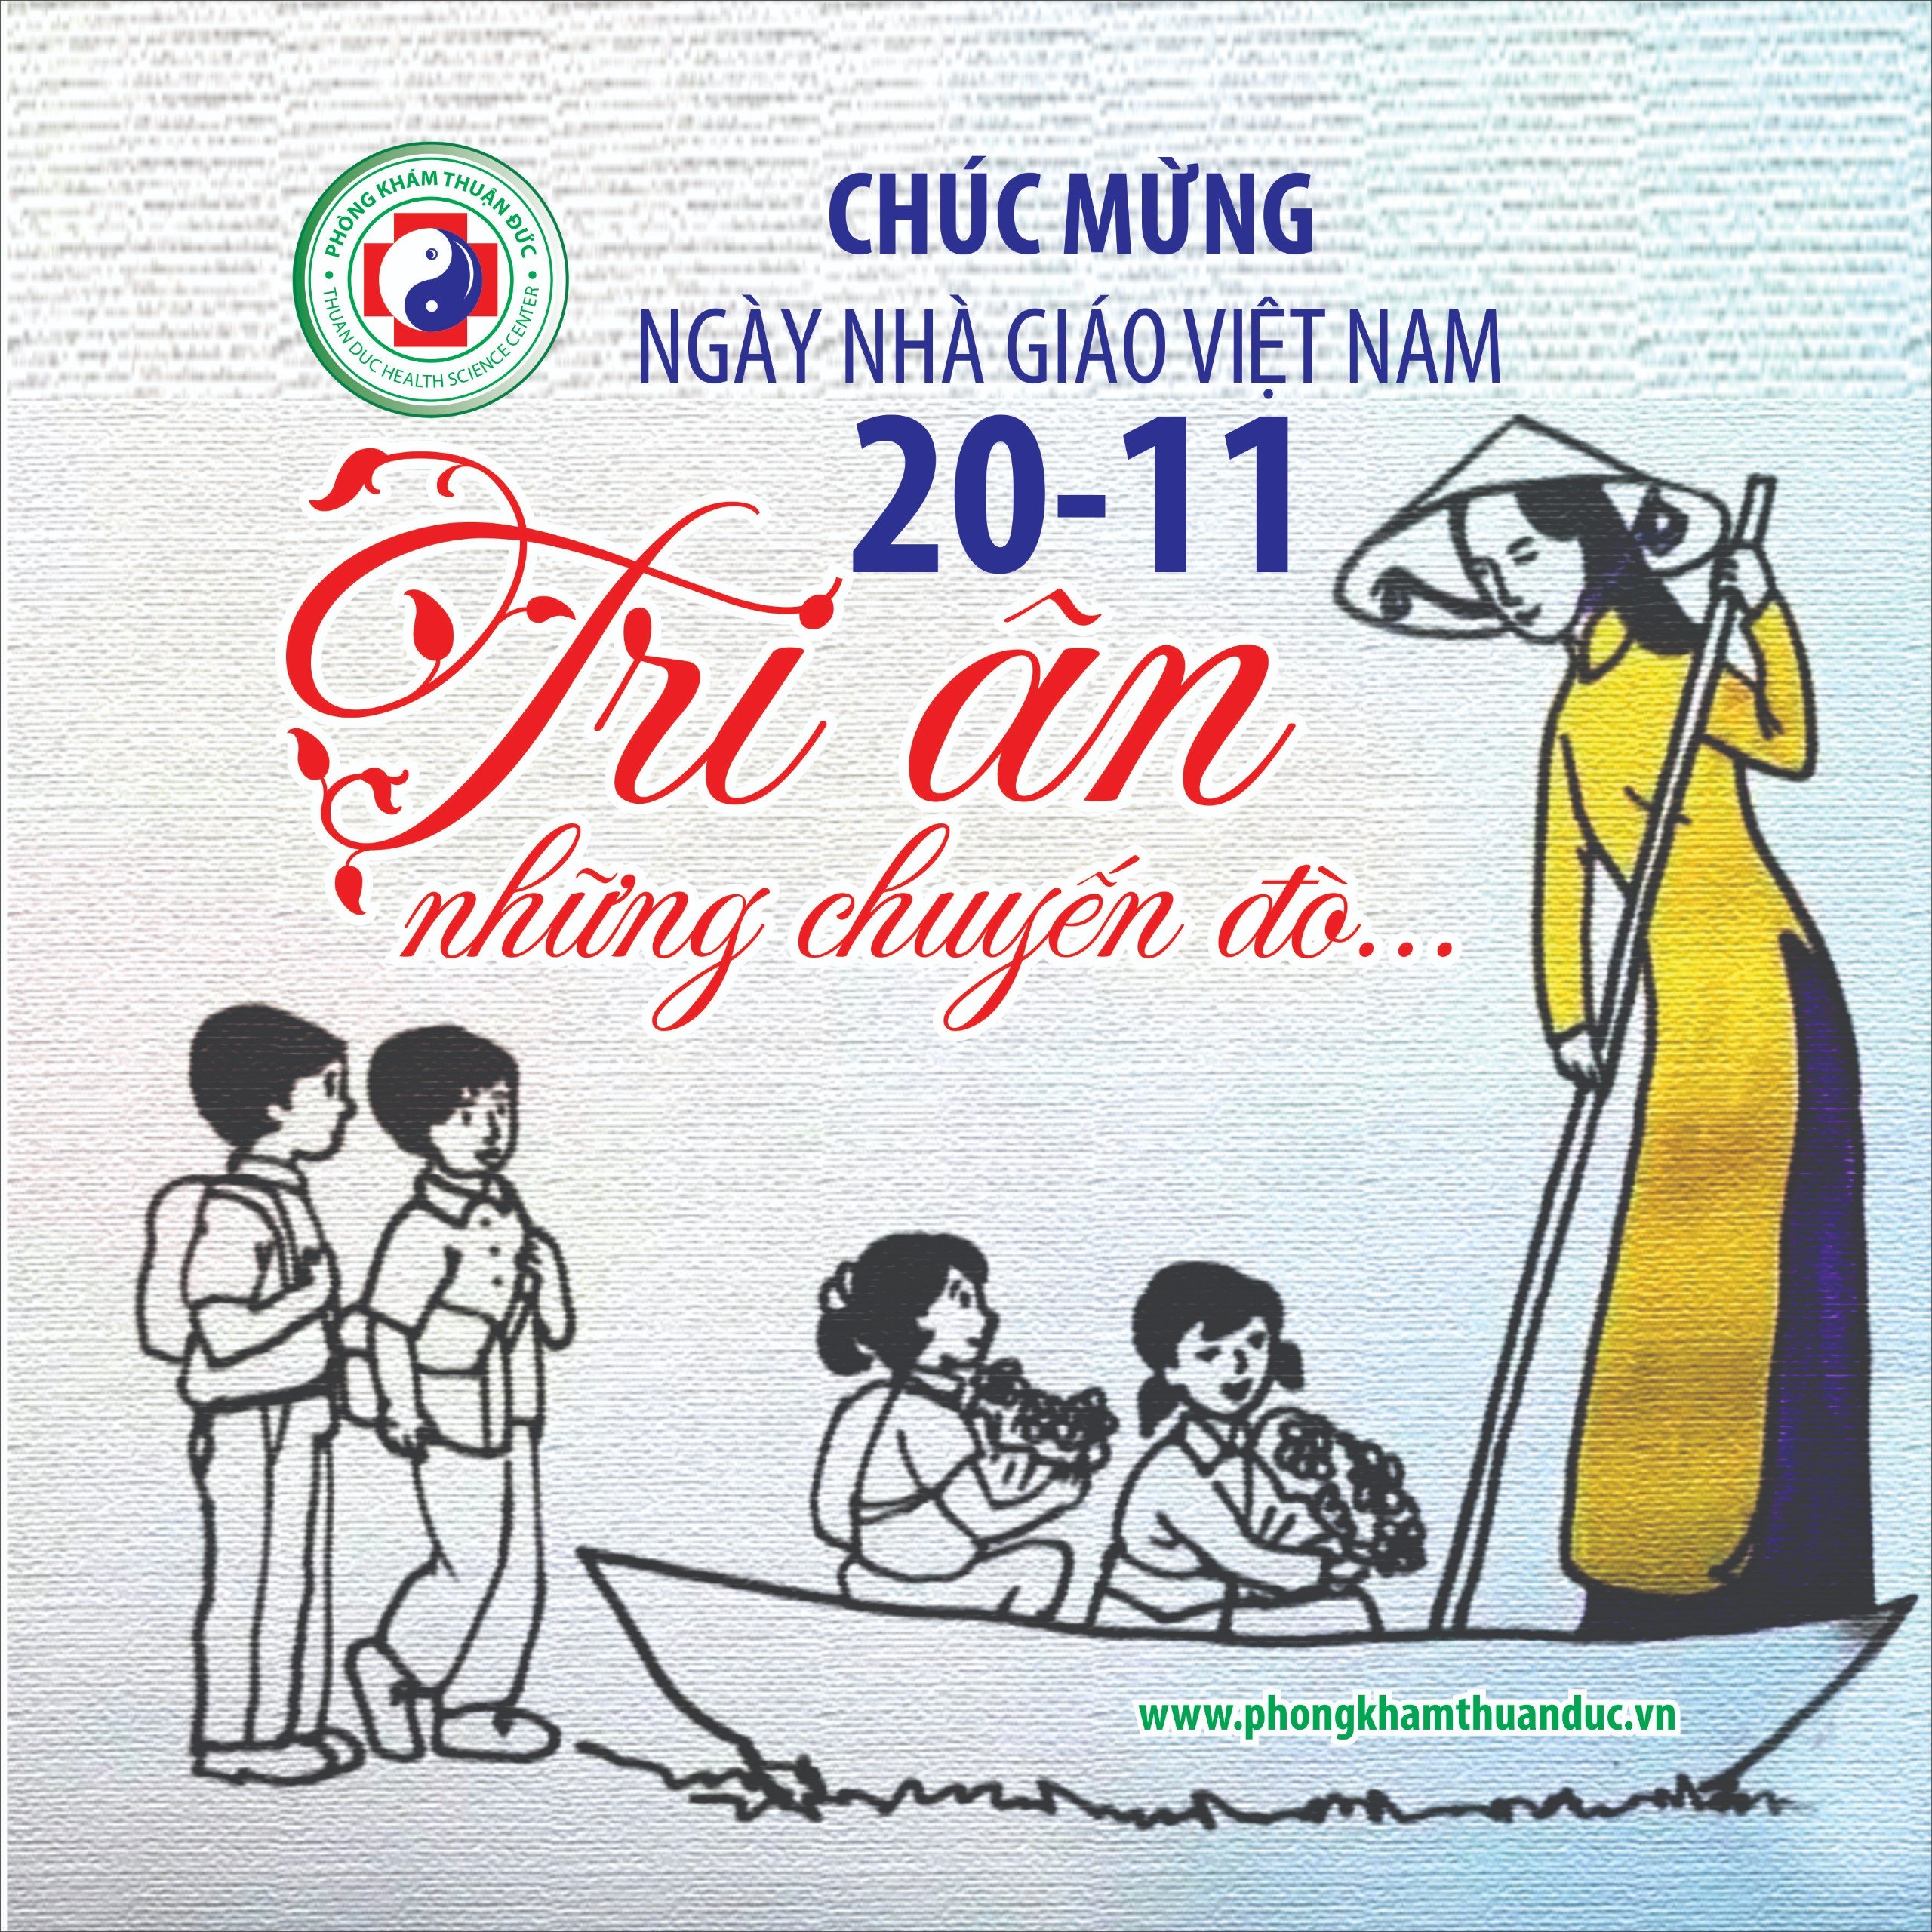 Chúc mừng Thầy Cô nhân Ngày Nhà giáo Việt Nam 20-11!